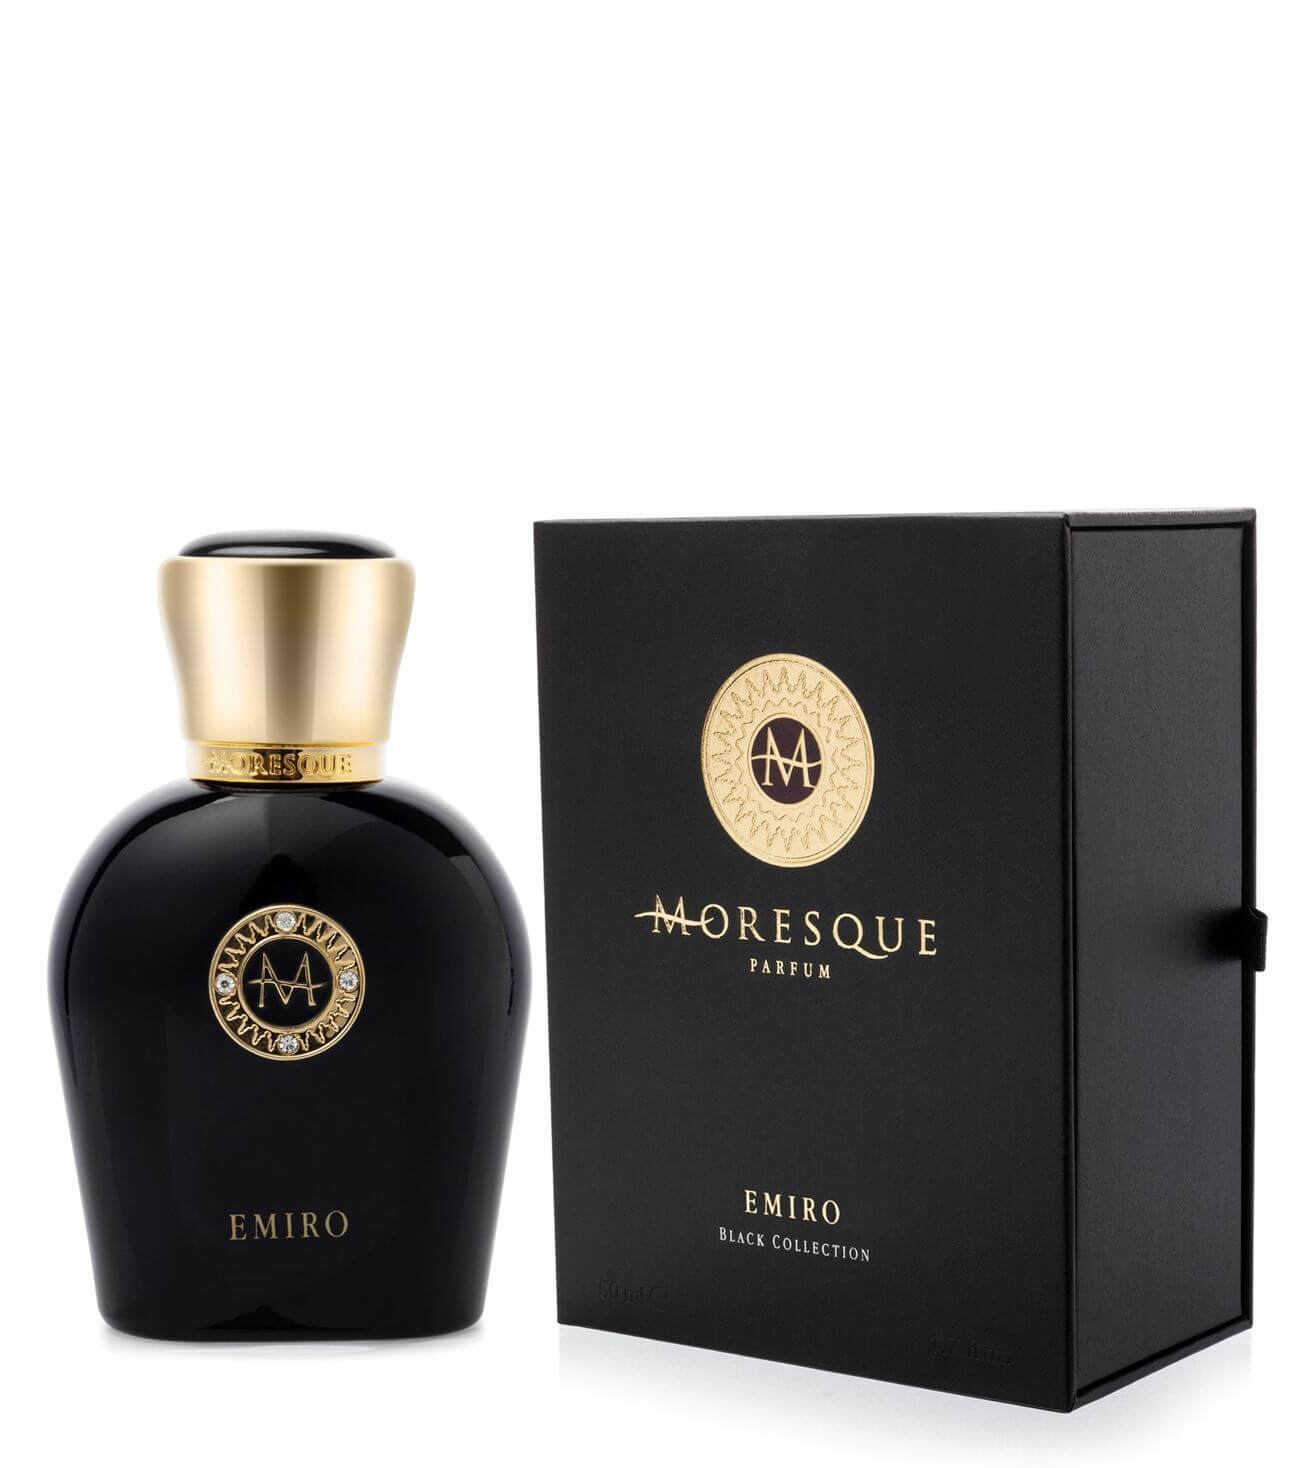 Moresque - Emiro - Black Collection.